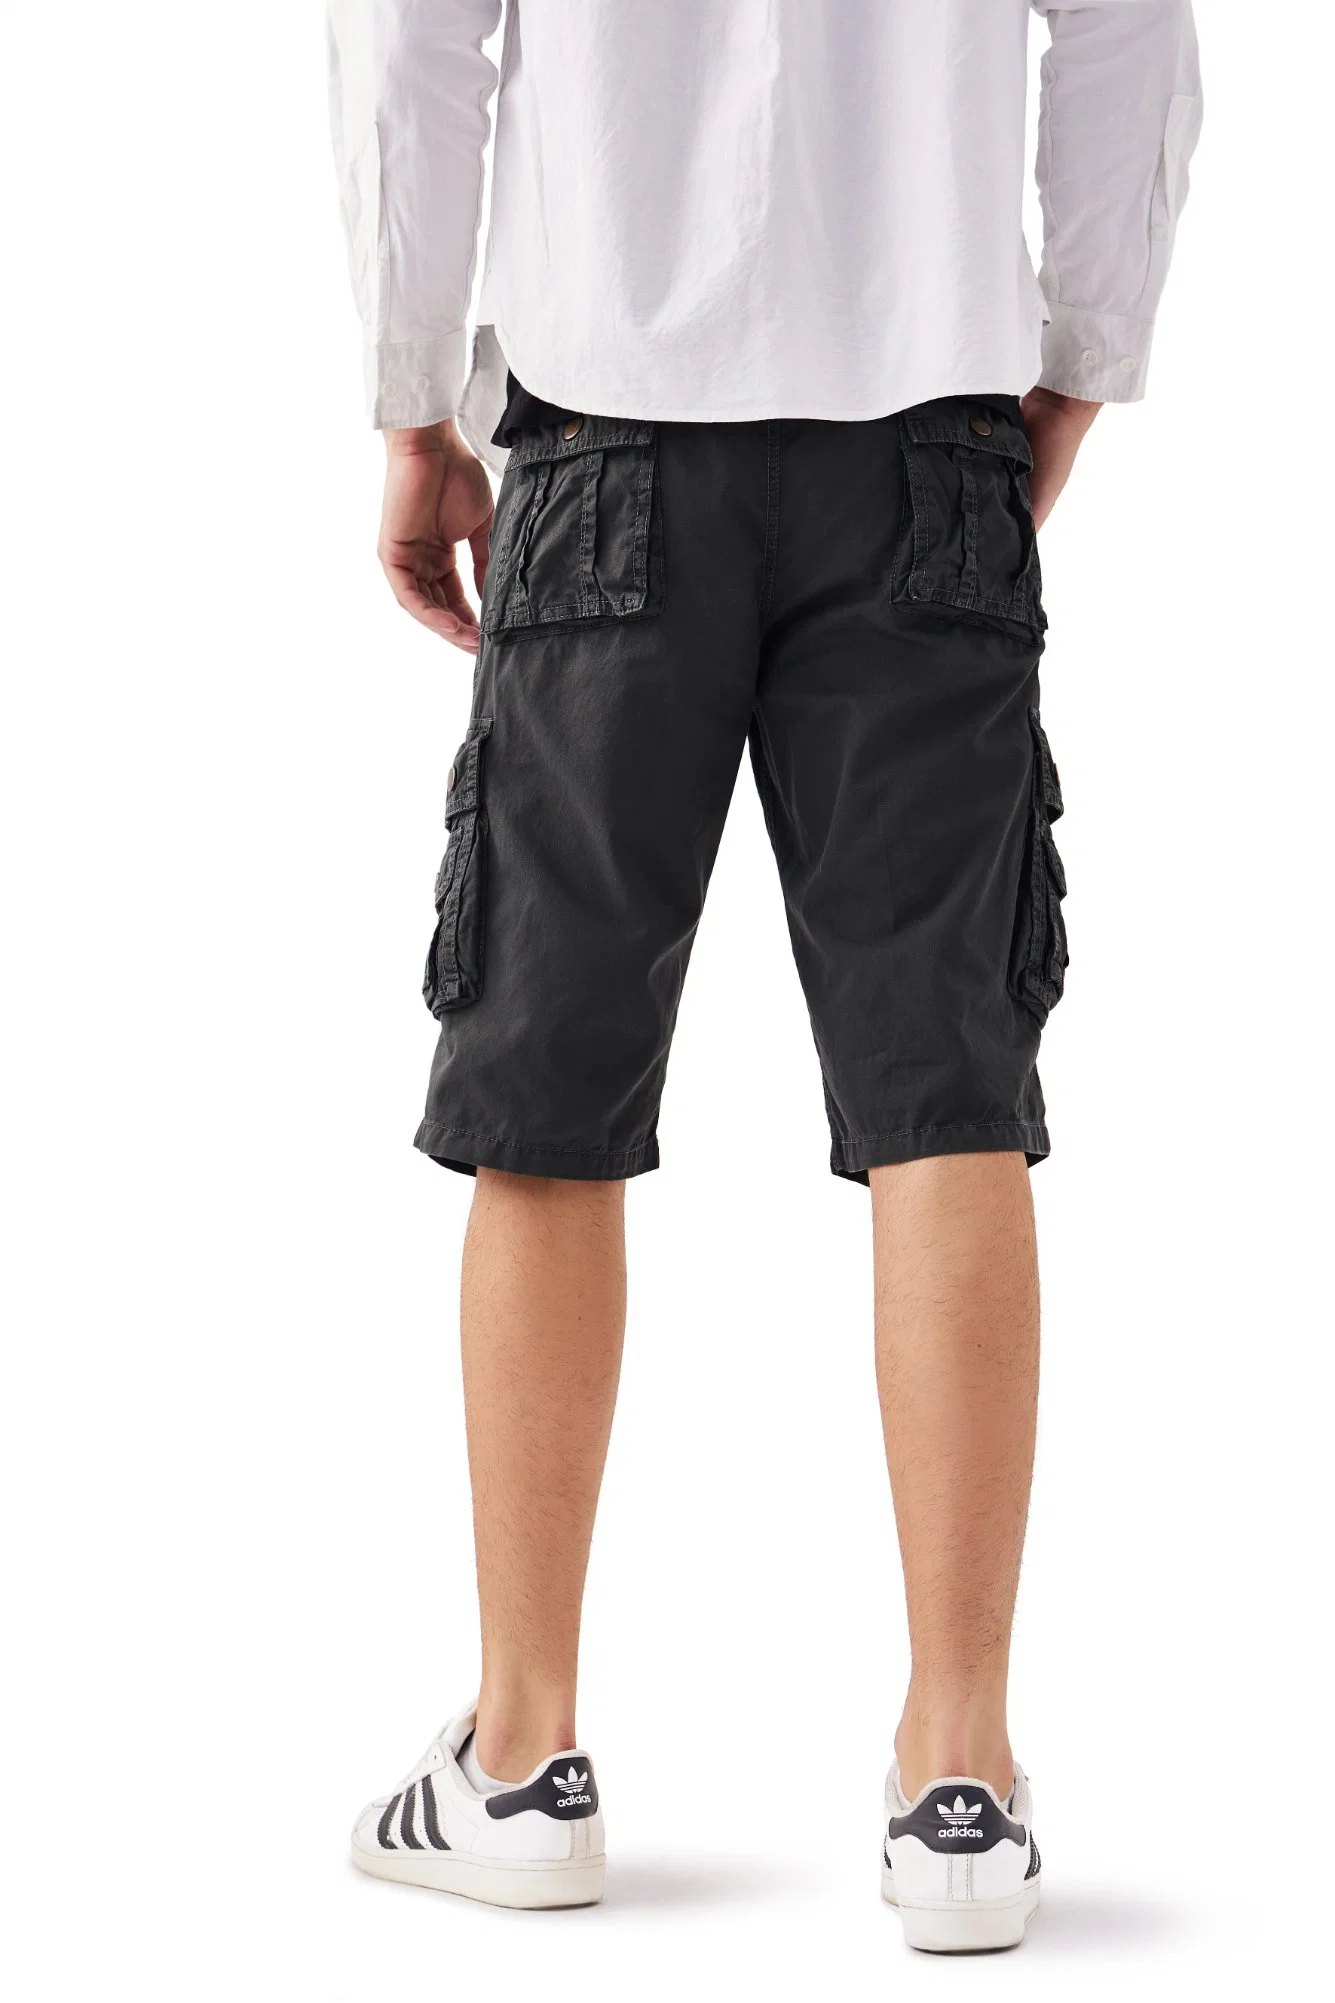 La Mens Cargo Shorts Shorts ropa deportiva Wasitband tejido elástico con una cuerda